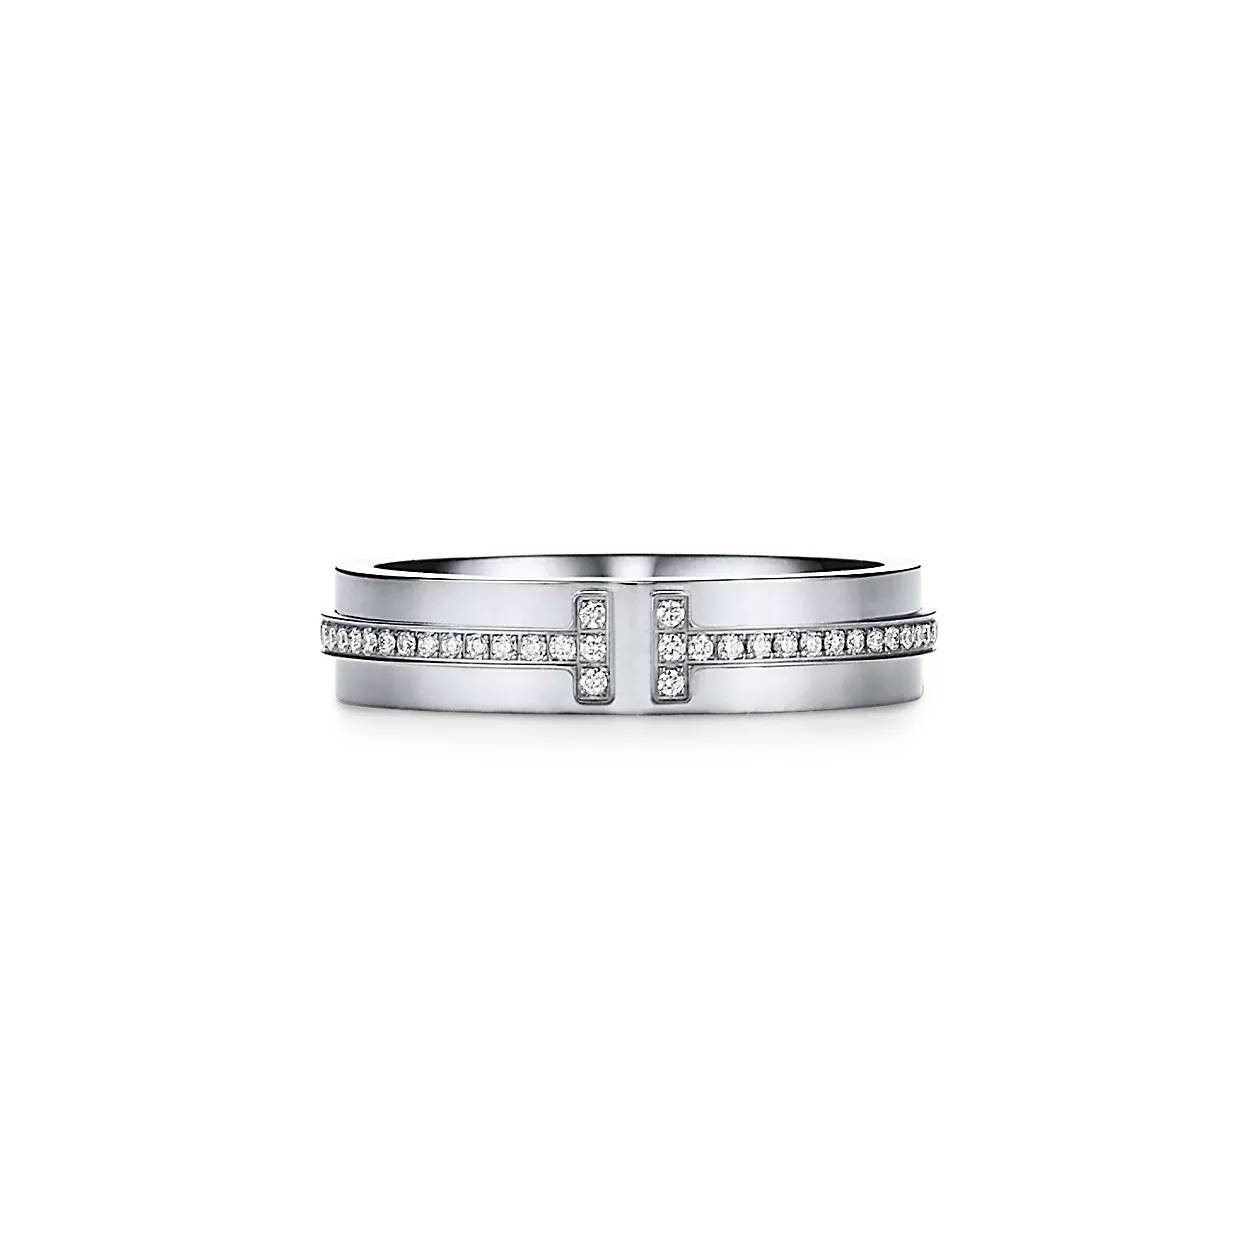 Tiffany T:네로우 다이아몬드 링, 18K 화이트 골드 이미지 번호 0